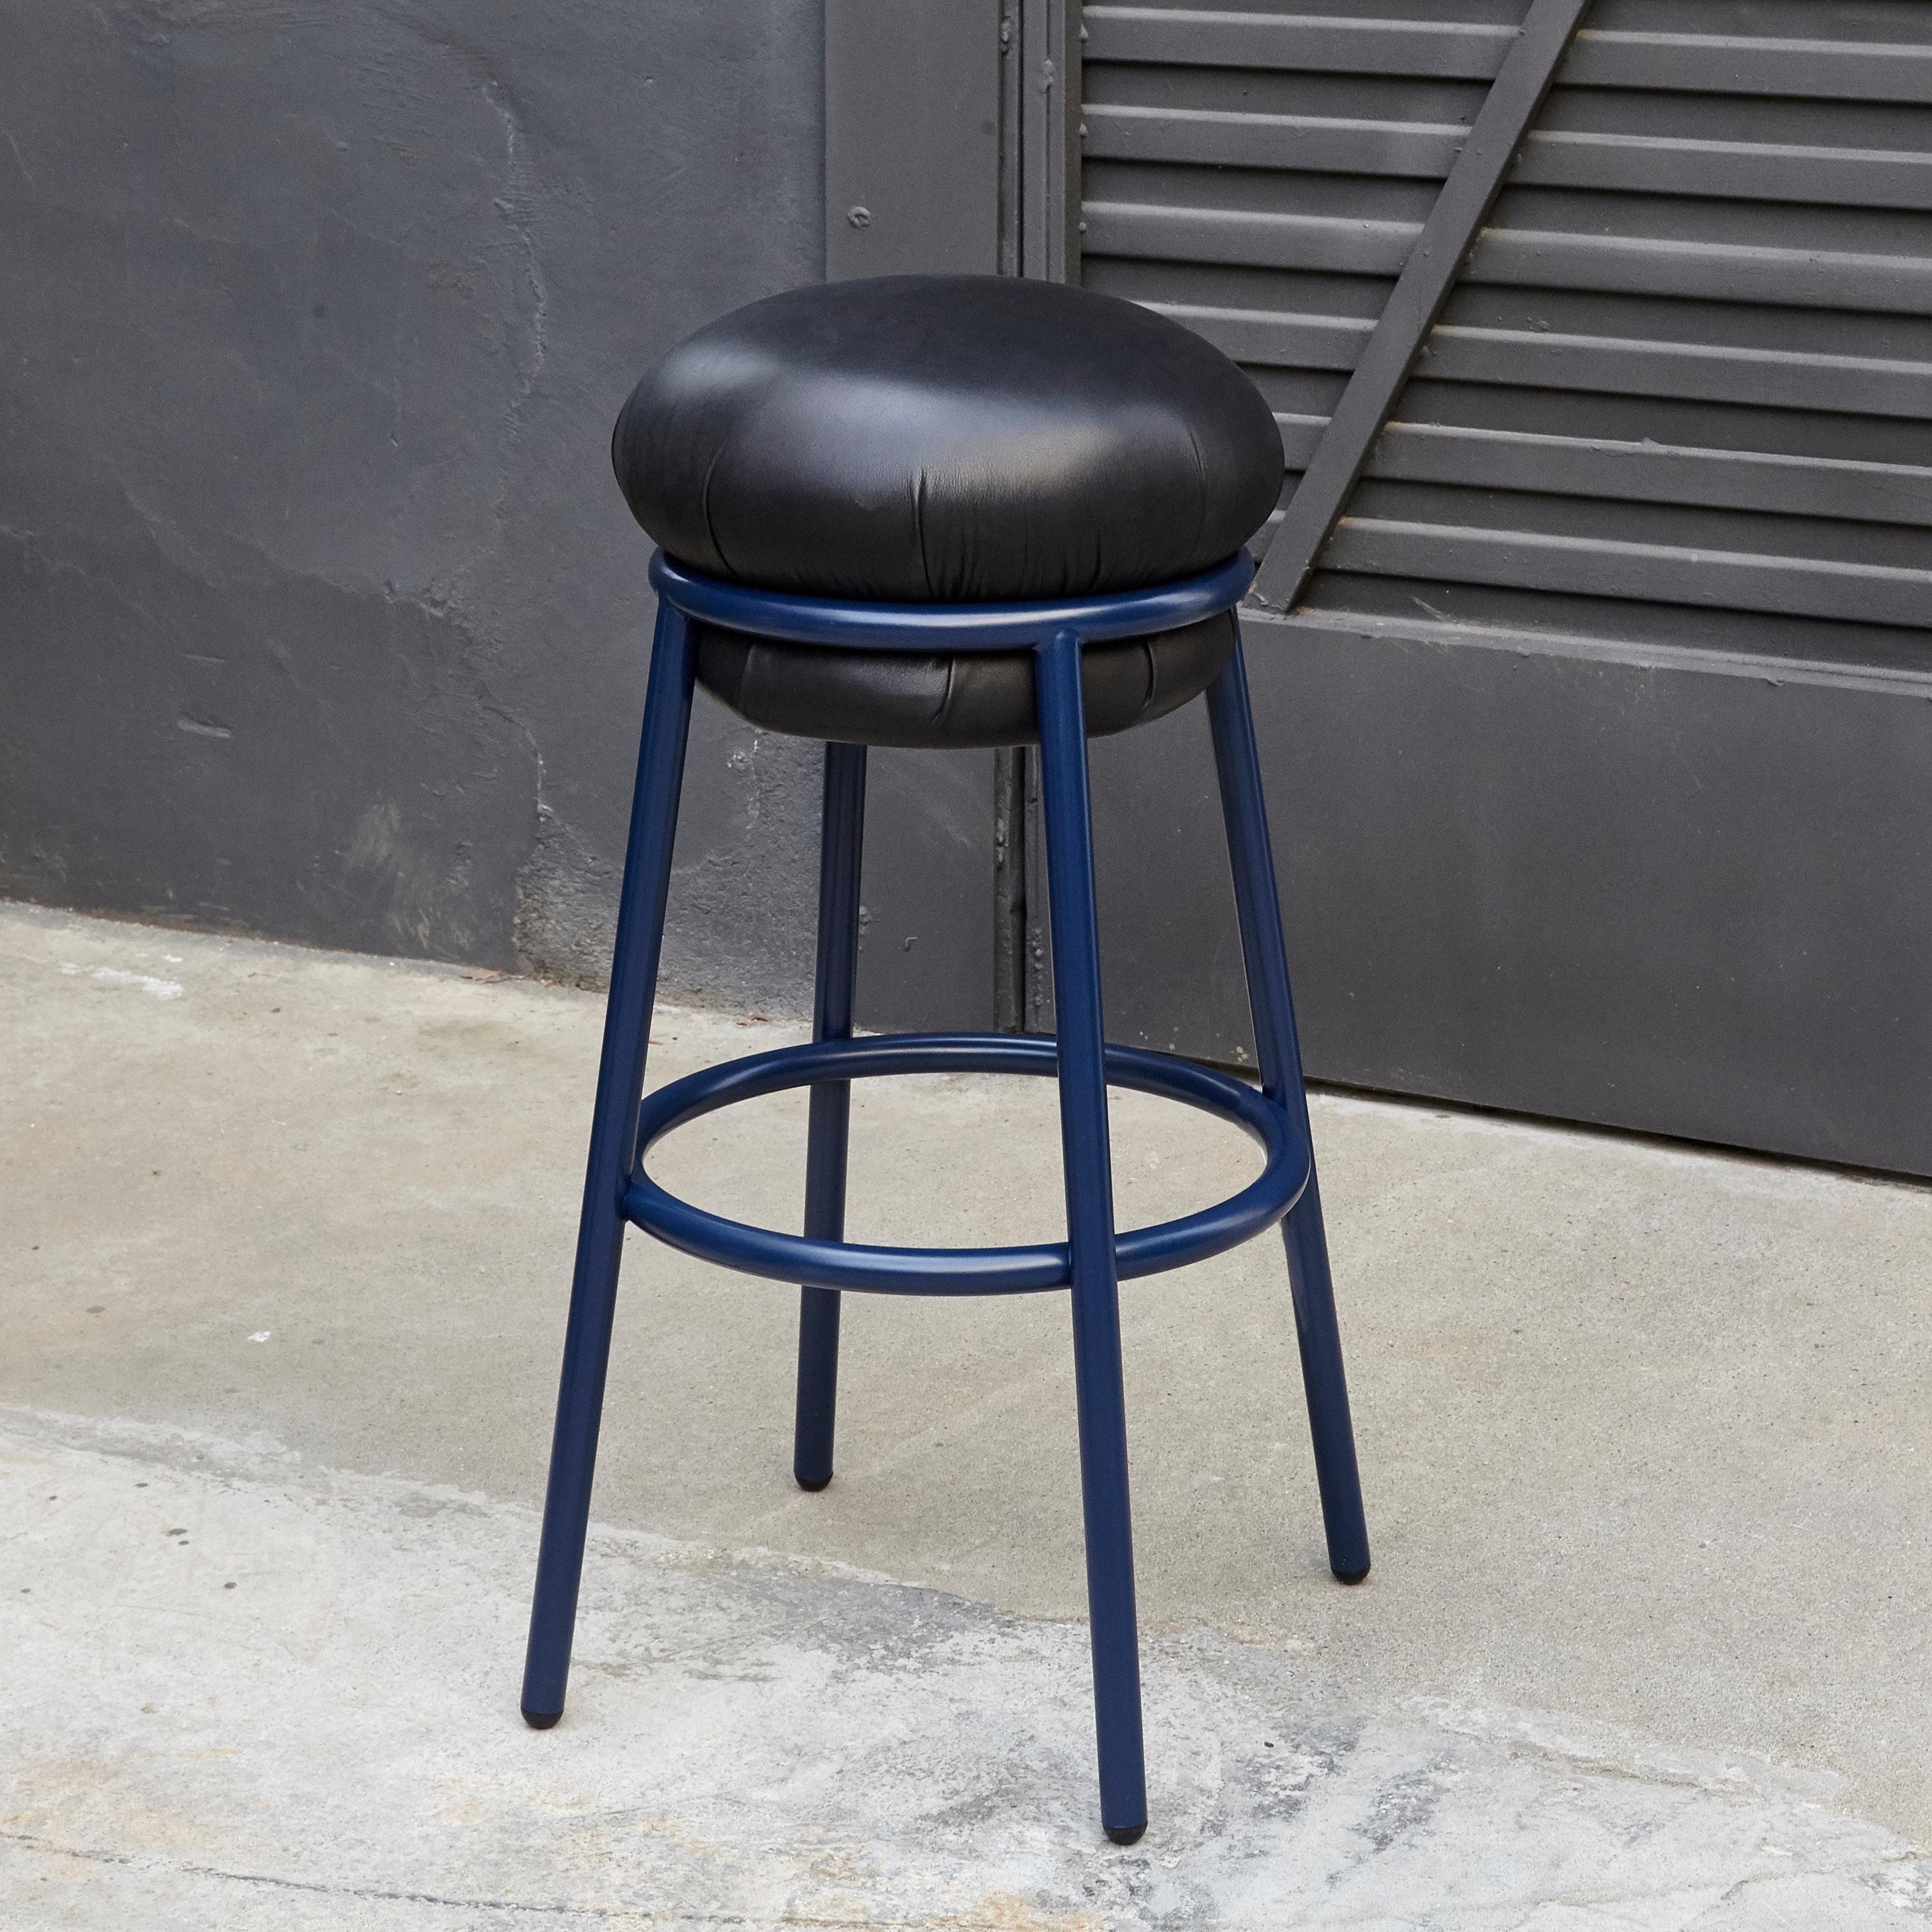 Hocker entworfen von Stephen Burks.

Strukturierter Sessel aus blauem Eisenrohr (25 mm). Sitz gepolstert in blauem Leder mit blauer Struktur.

Die Lederpolsterung bedeckt die nackte Eisenstruktur. 

Maße: Ø 36 x H 80 cm

Jahr: 2018.

In gutem